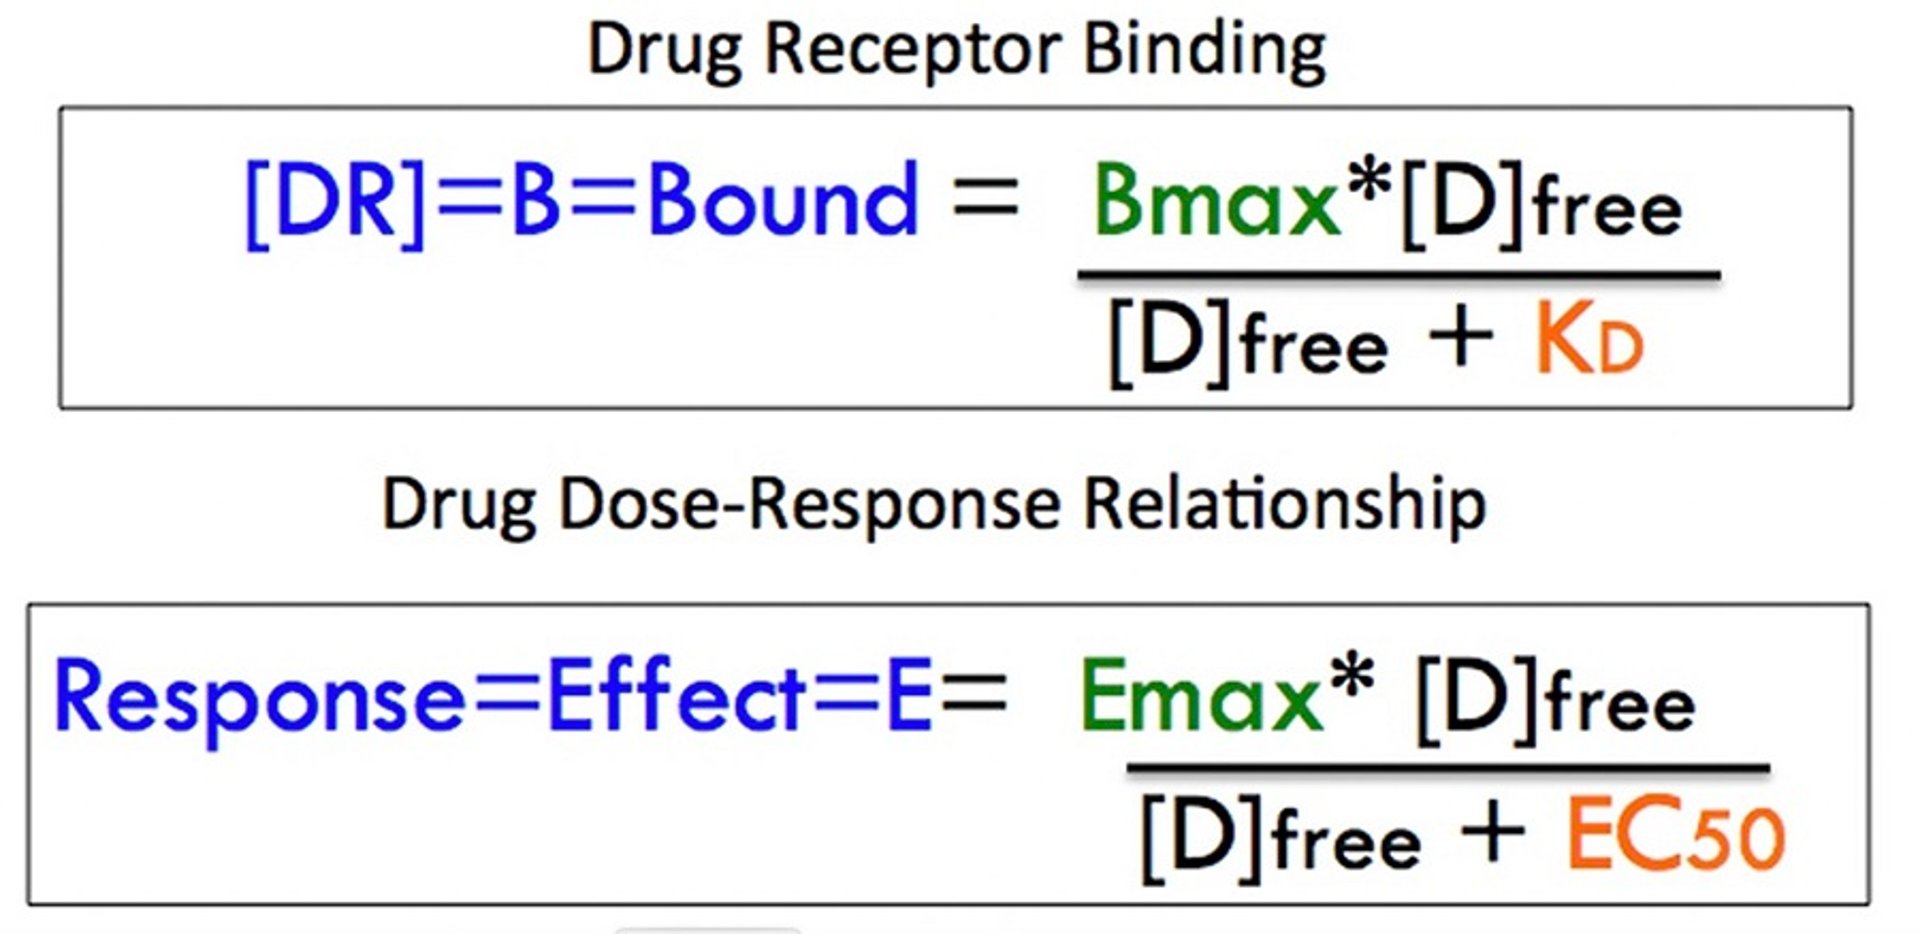 Comparison of drug-receptor binding to drug dose-response relationship